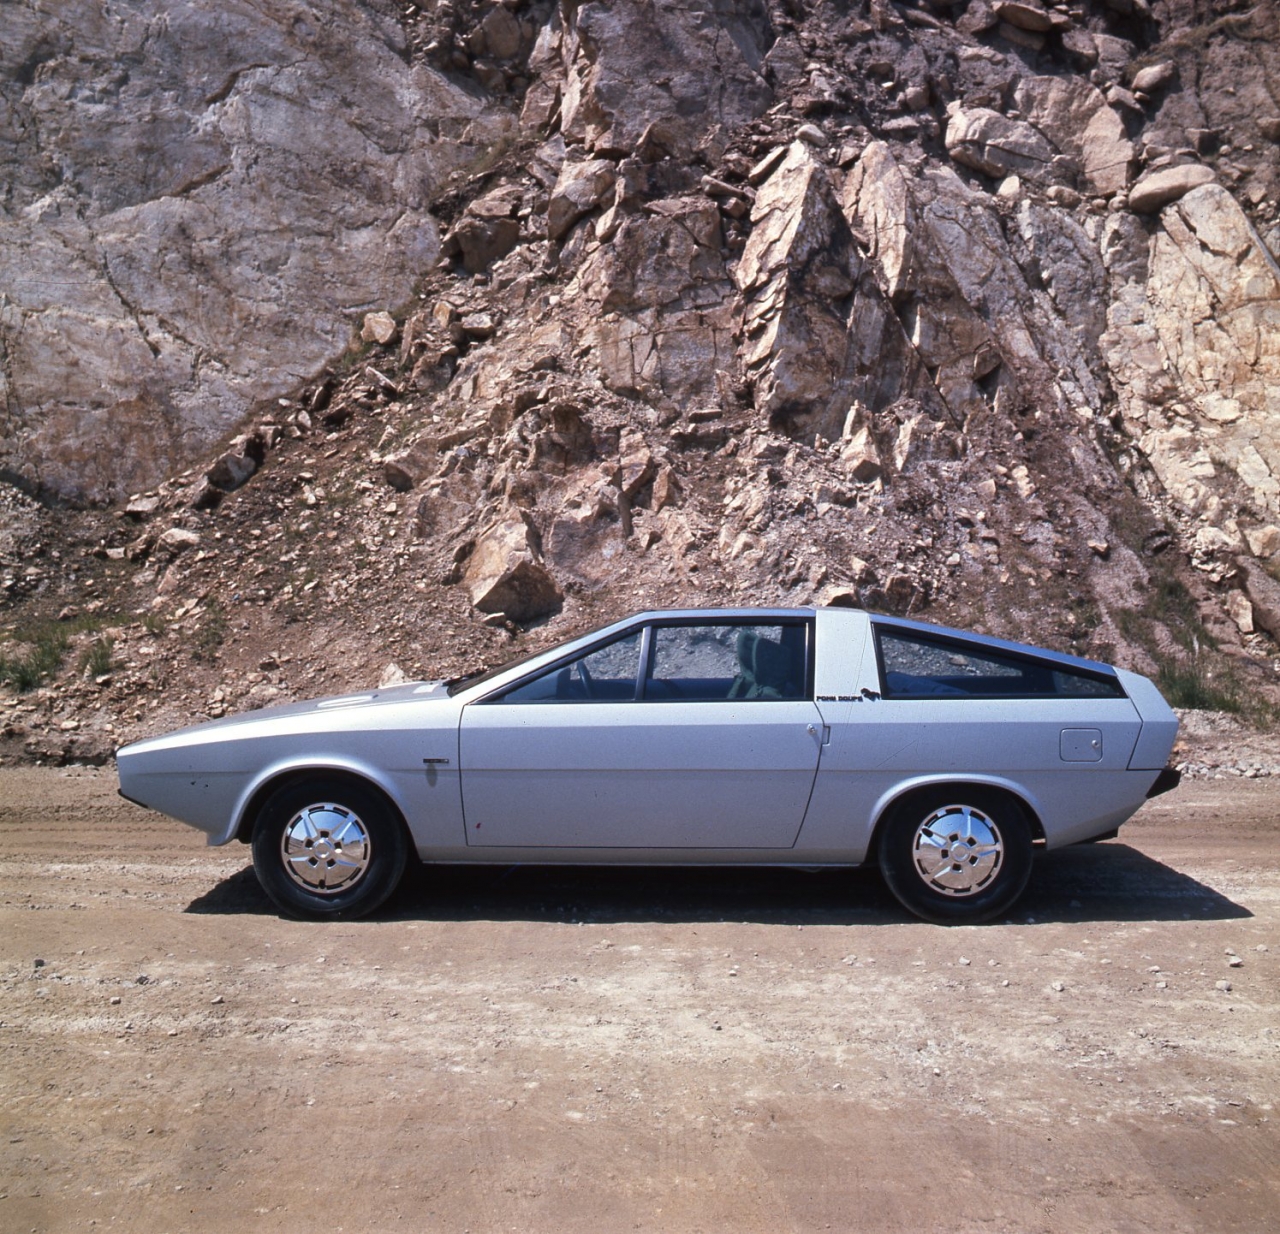 현대자동차가 공개한 포니 쿠페 프로토타입 사진.